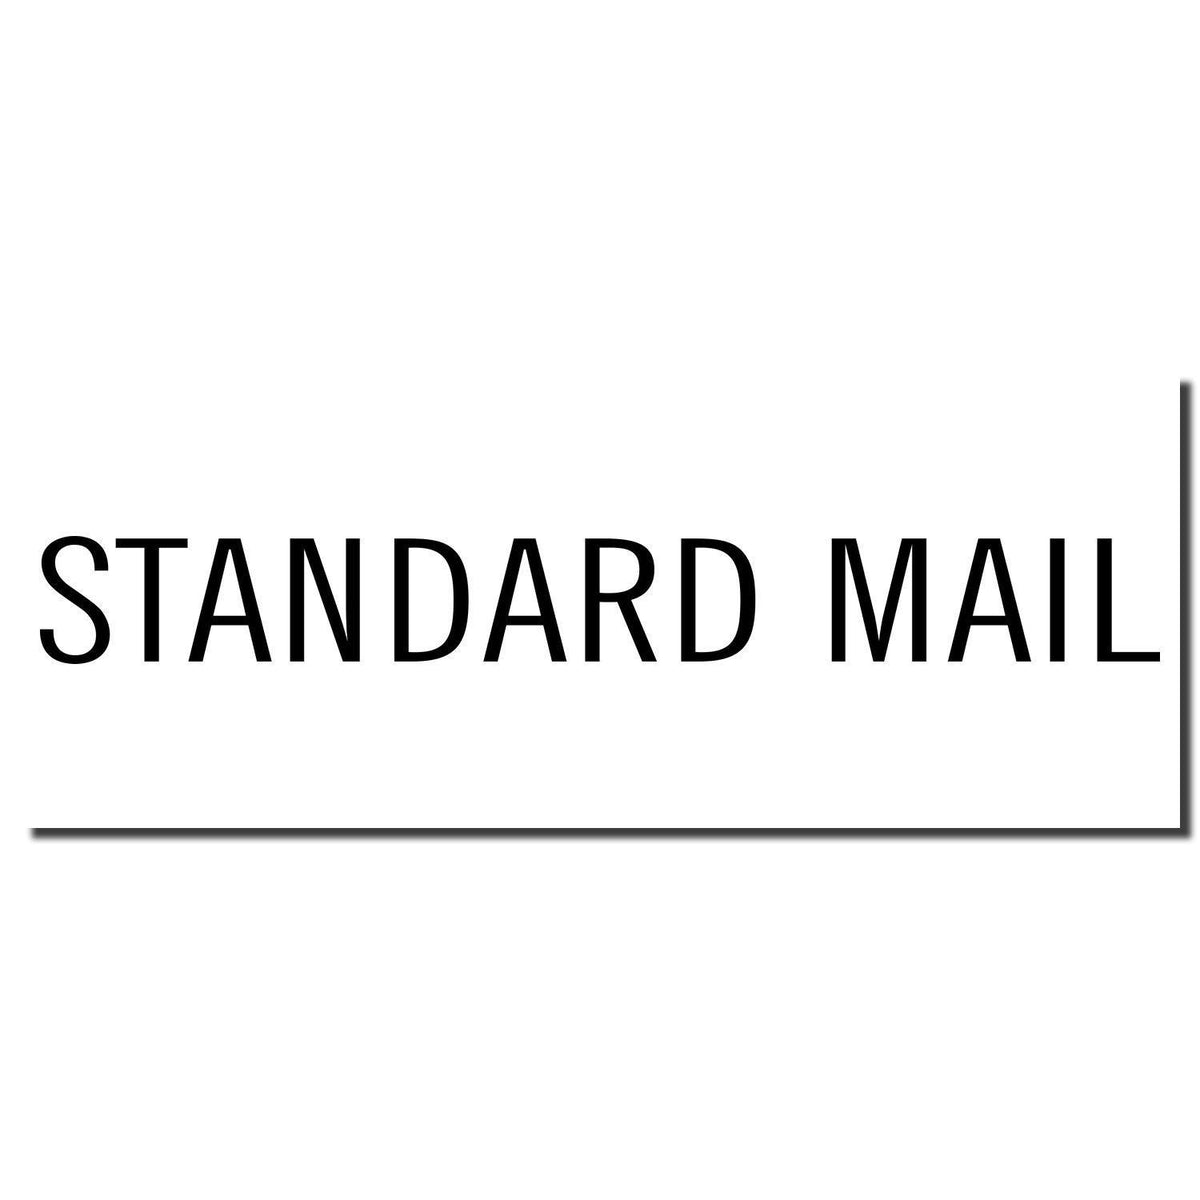 Enlarged Imprint Large Pre-Inked Standard Mail Stamp Sample